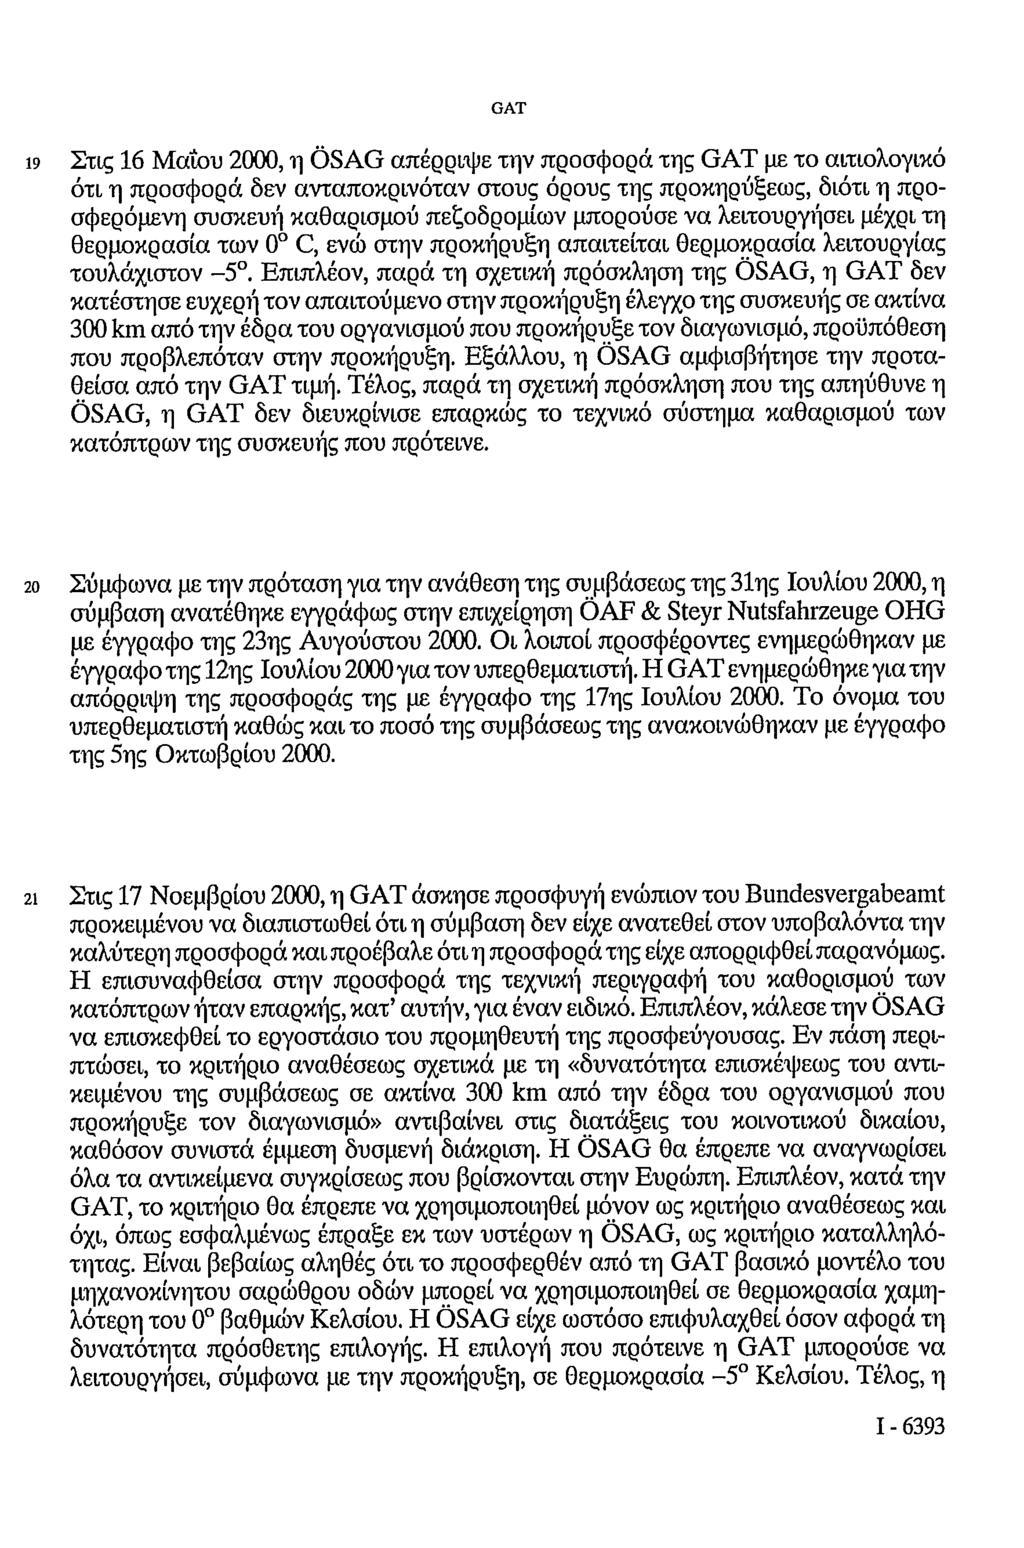 19 Στις 16 Μαΐου 2000, η ÖSAG απέρριψε την προσφορά της με το αιτιολογικό ότι η προσφορά δεν ανταποκρινόταν στους όρους της προκηρύξεως, διότι η προσφερόμενη συσκευή καθαρισμού πεζοδρομίων μπορούσε